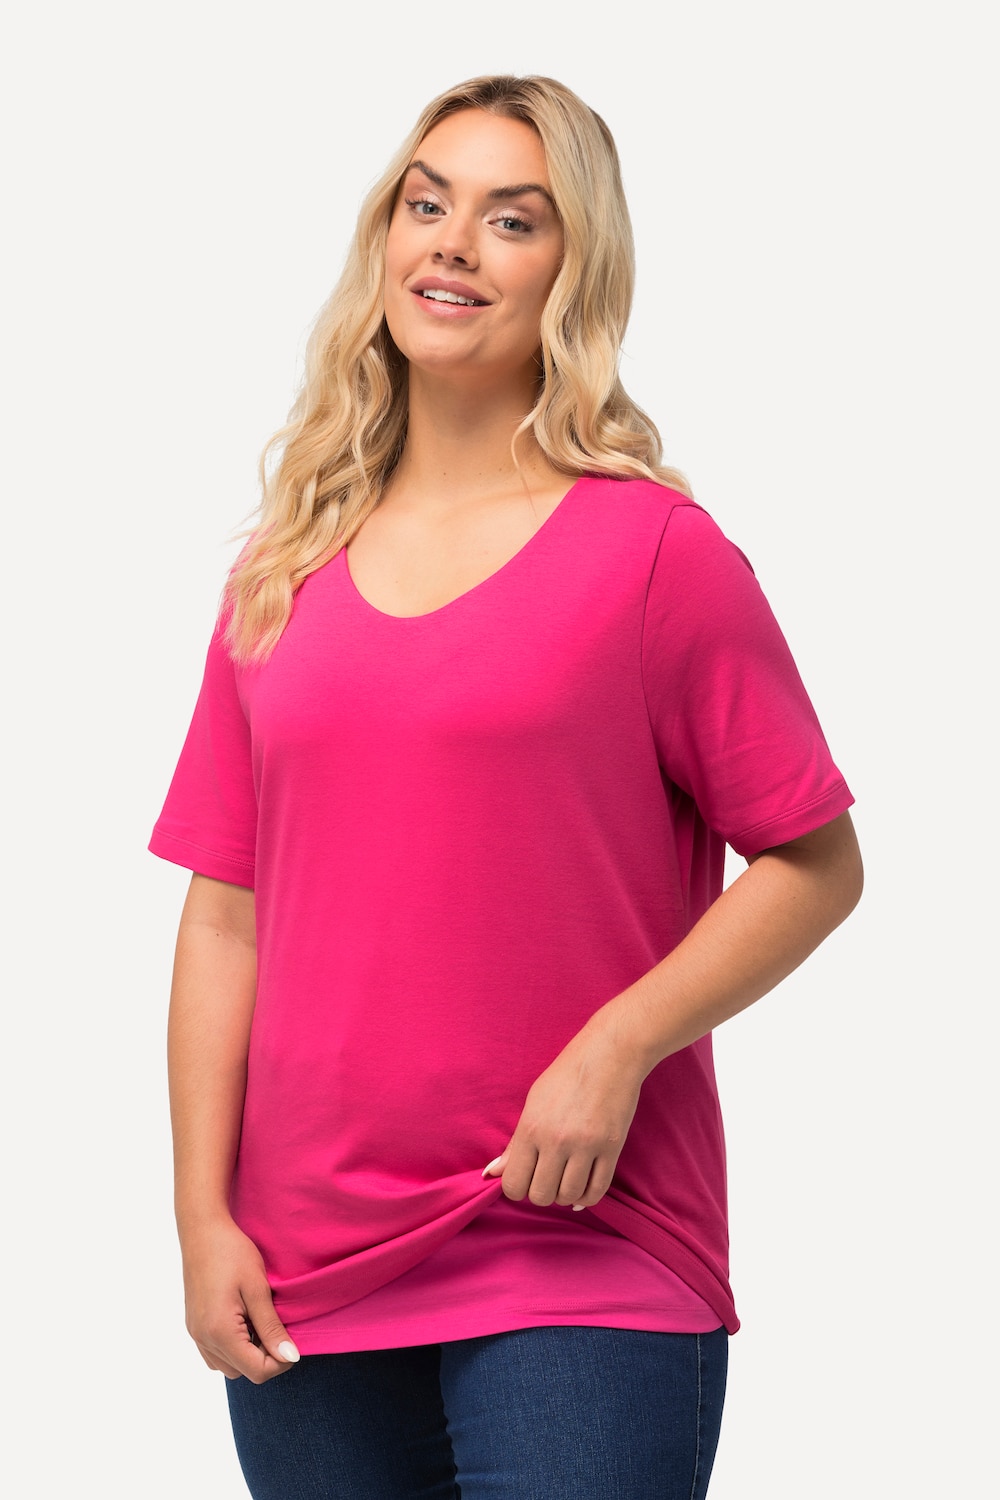 Grote Maten T-shirt, Dames, roze, Maat: 50/52, Katoen, Ulla Popken